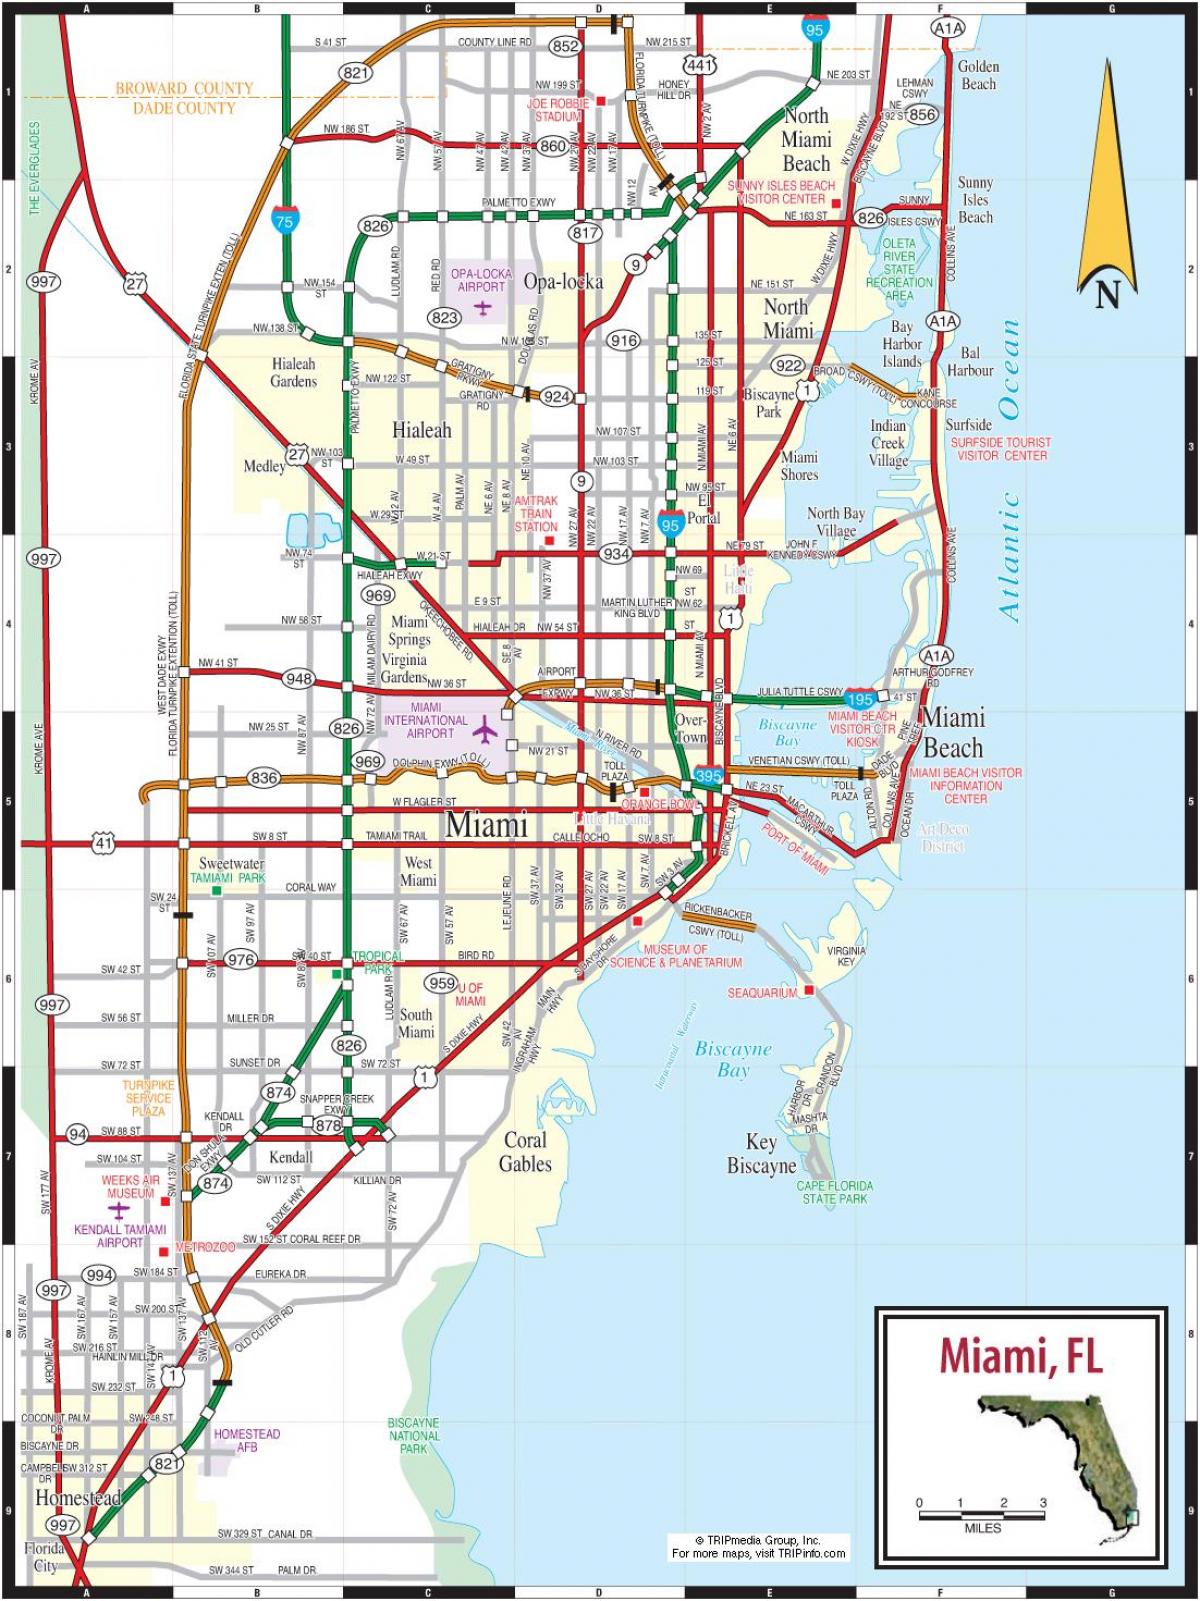 Plan des routes de Miami